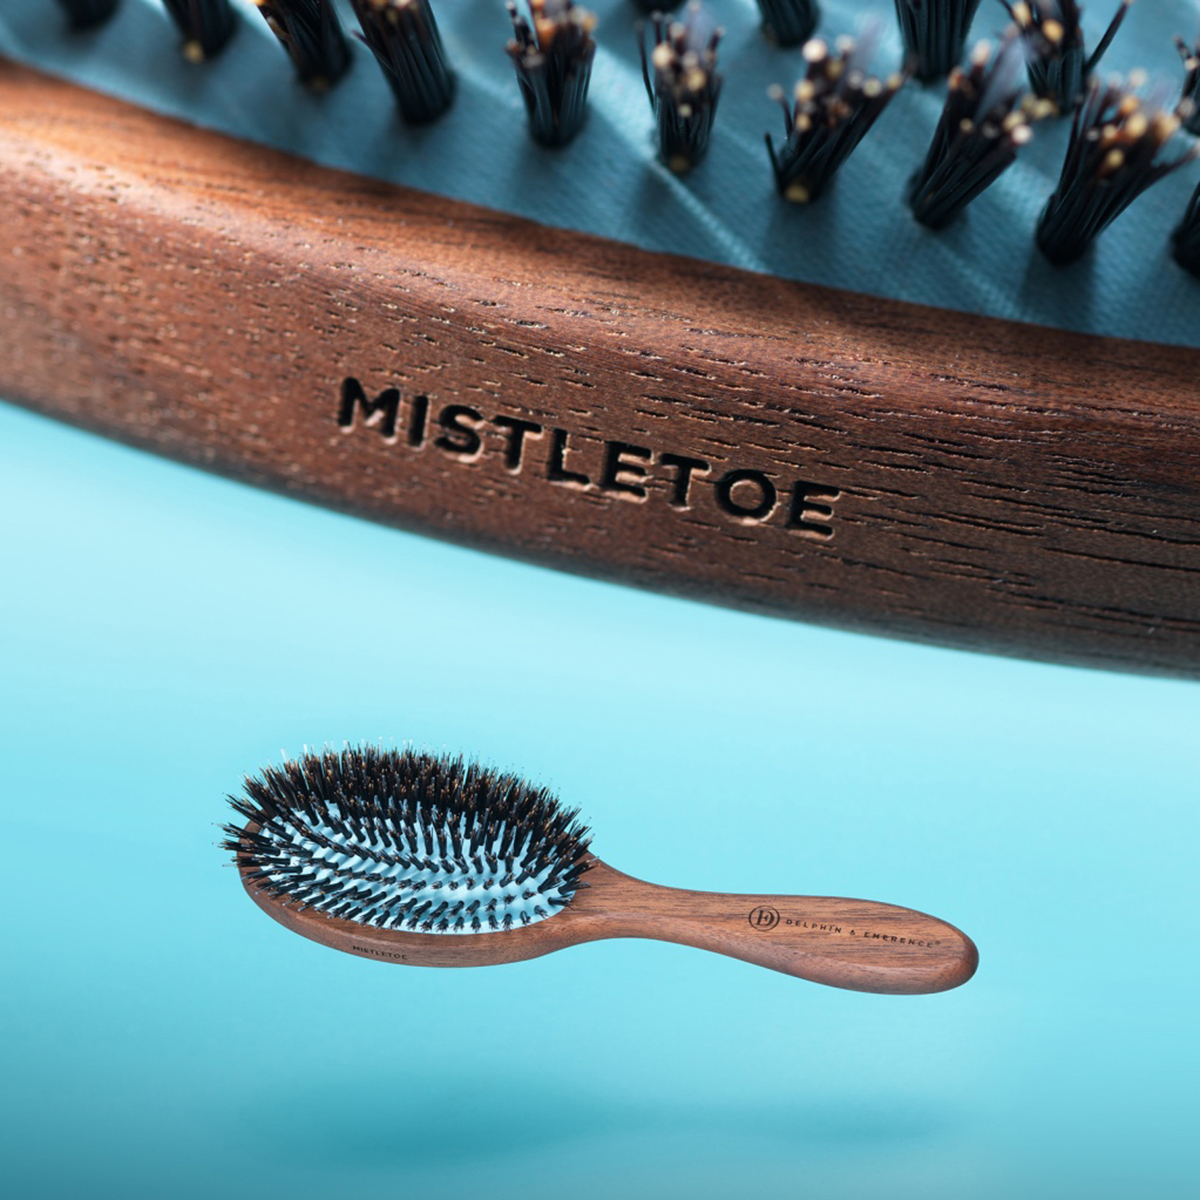 Delphin & Emerence - Mistletoe Tangle Power Soft Hairbrush